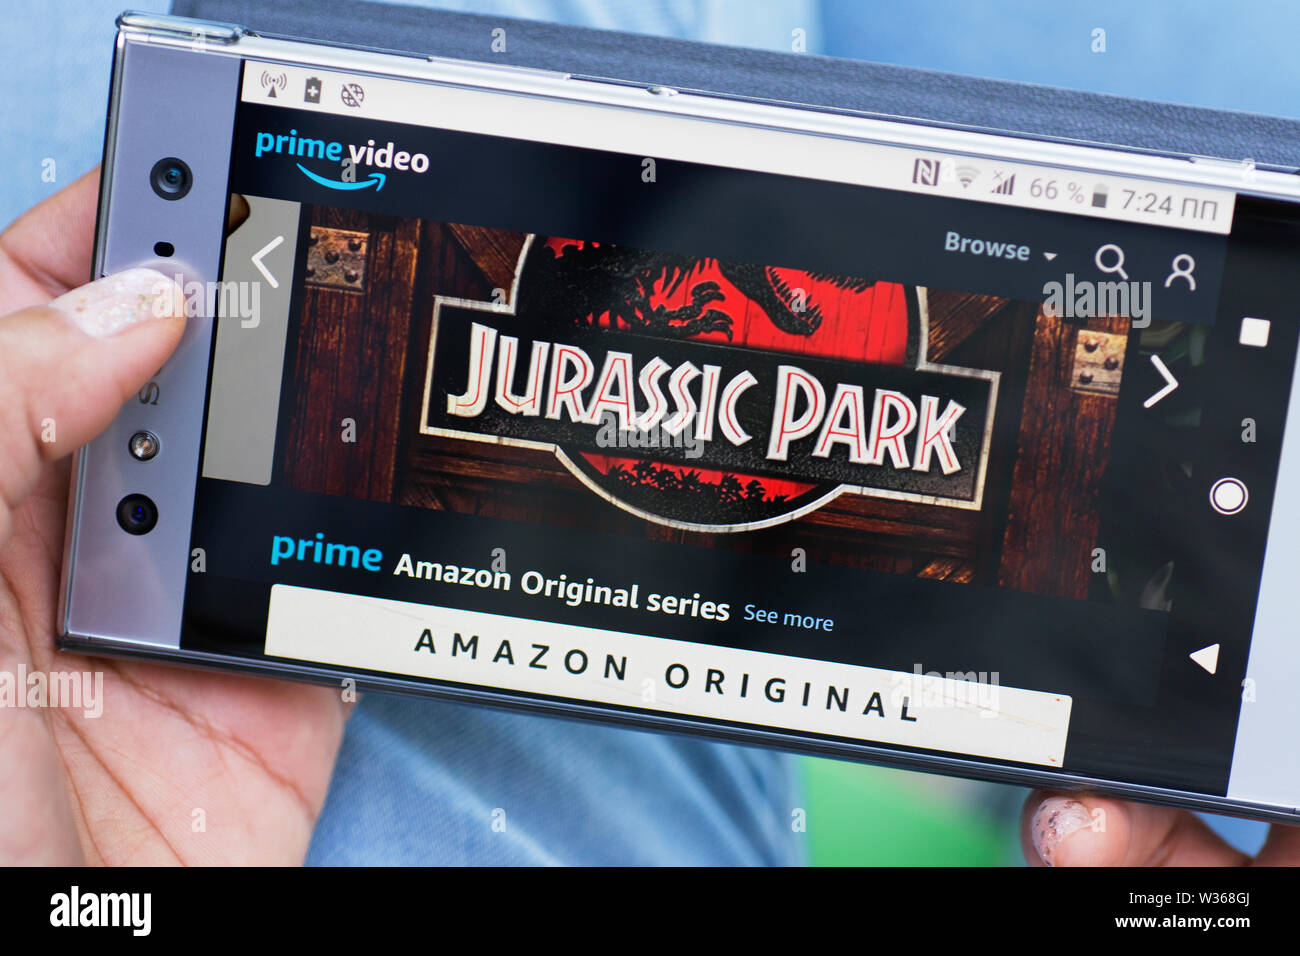 D'Amazone, le premier Vidéo Amazon Série Originale, Jurassic Park Site web streaming sur l'écran du téléphone Mobile Smartphone Banque D'Images